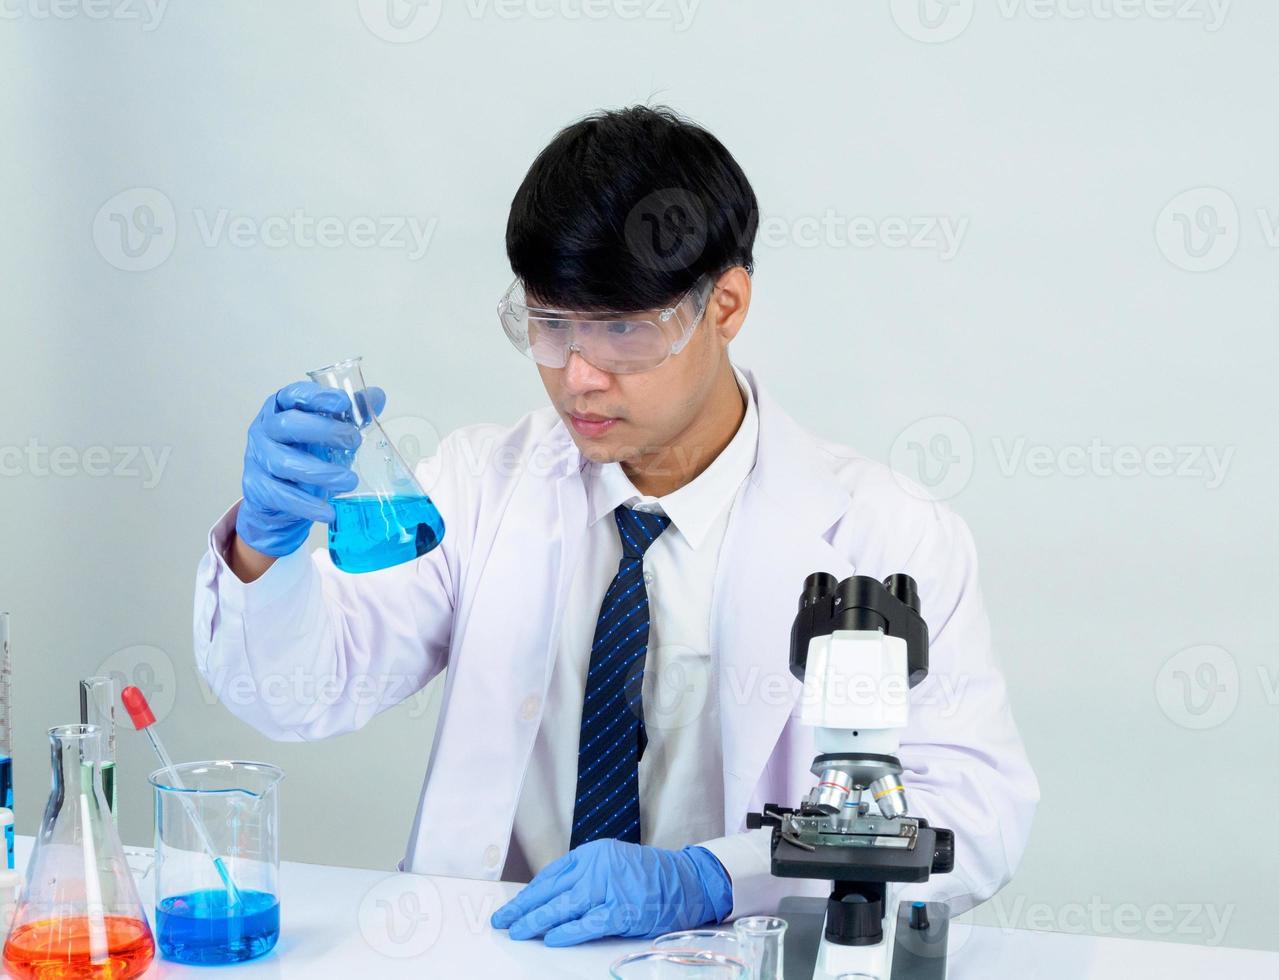 cientista estudante asiático no laboratório de mistura de reagentes em um laboratório de pesquisa científica com tubos de ensaio de vários tamanhos e microscópios. em cima da mesa no fundo branco do laboratório de química de laboratório. foto